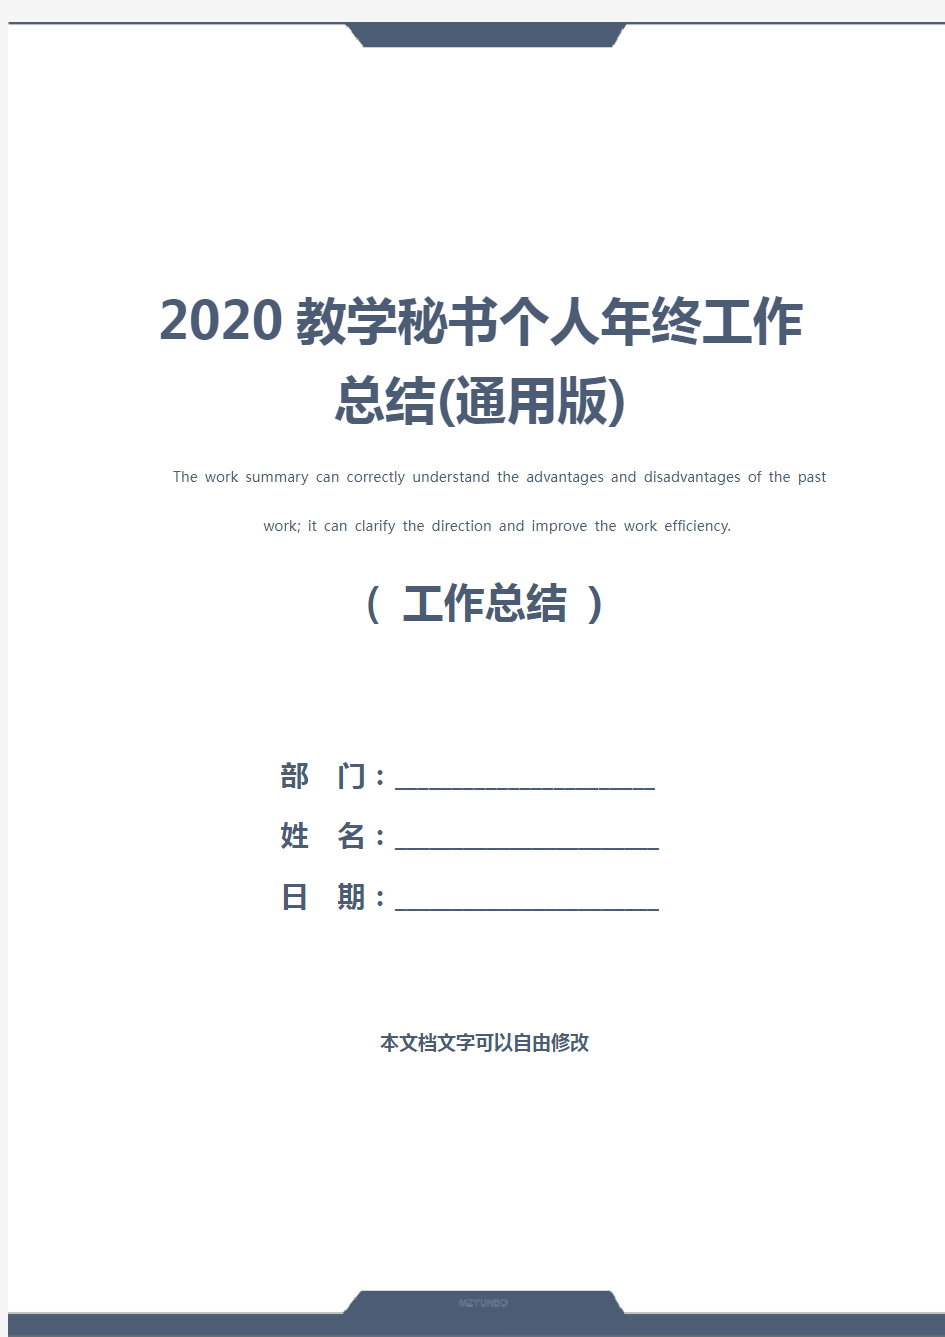 2020教学秘书个人年终工作总结(通用版)